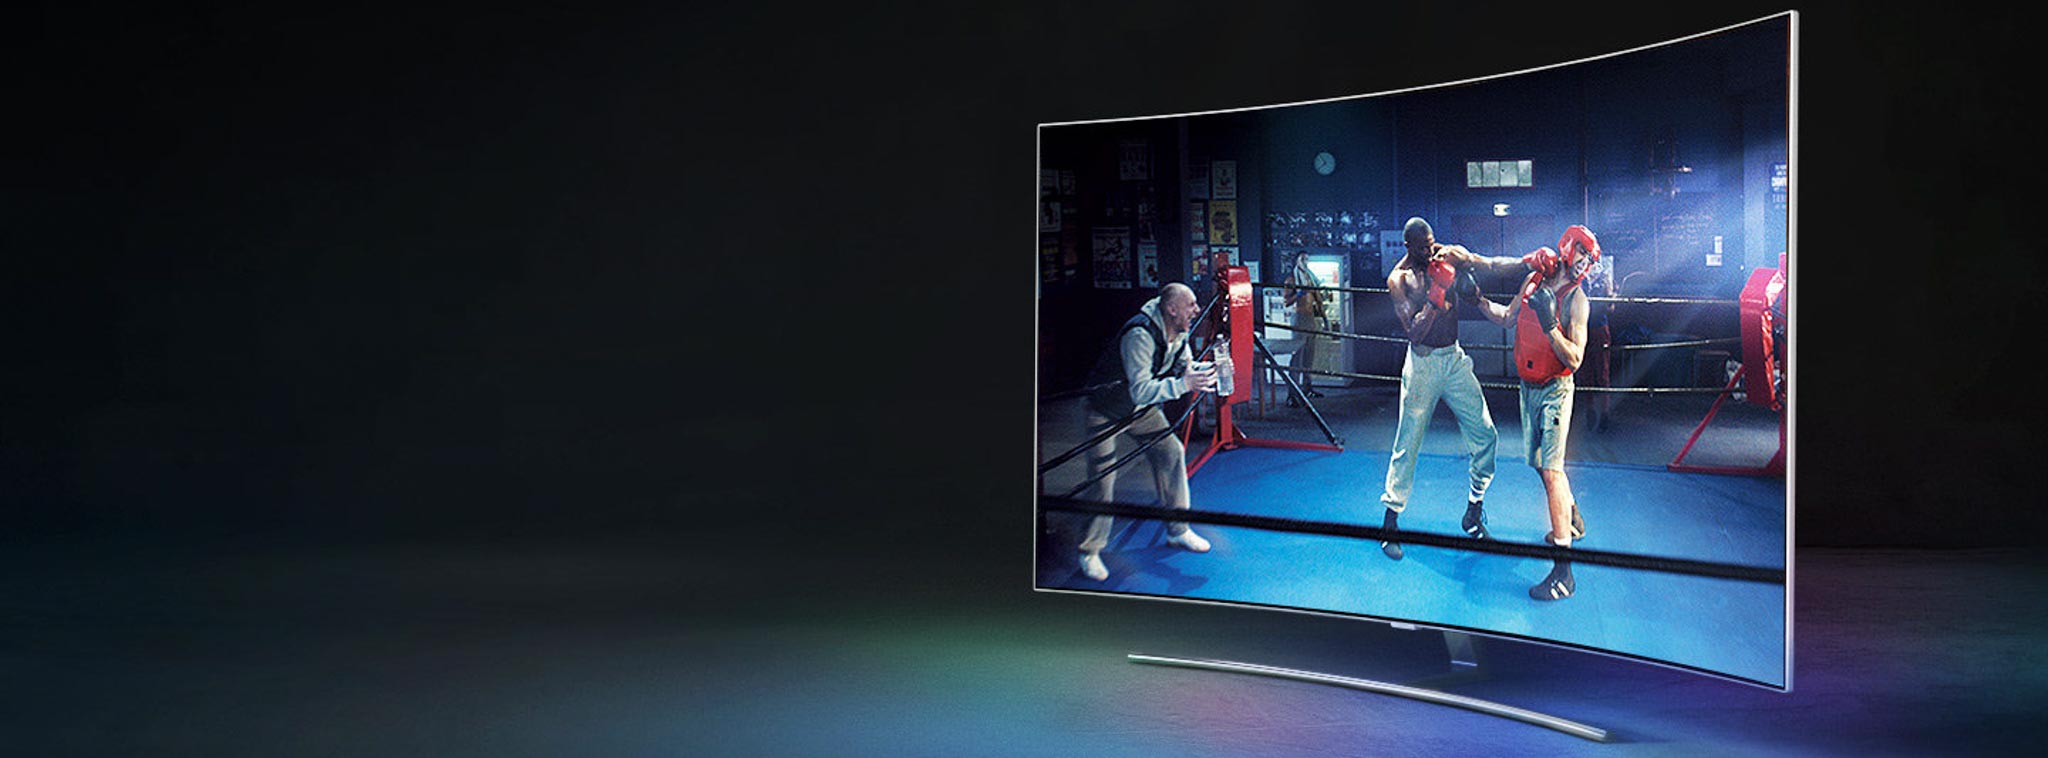 LG Display xác nhận sẽ cung cấp tấm nền kích thước 65 inch và 75 inch cho TV Samsung